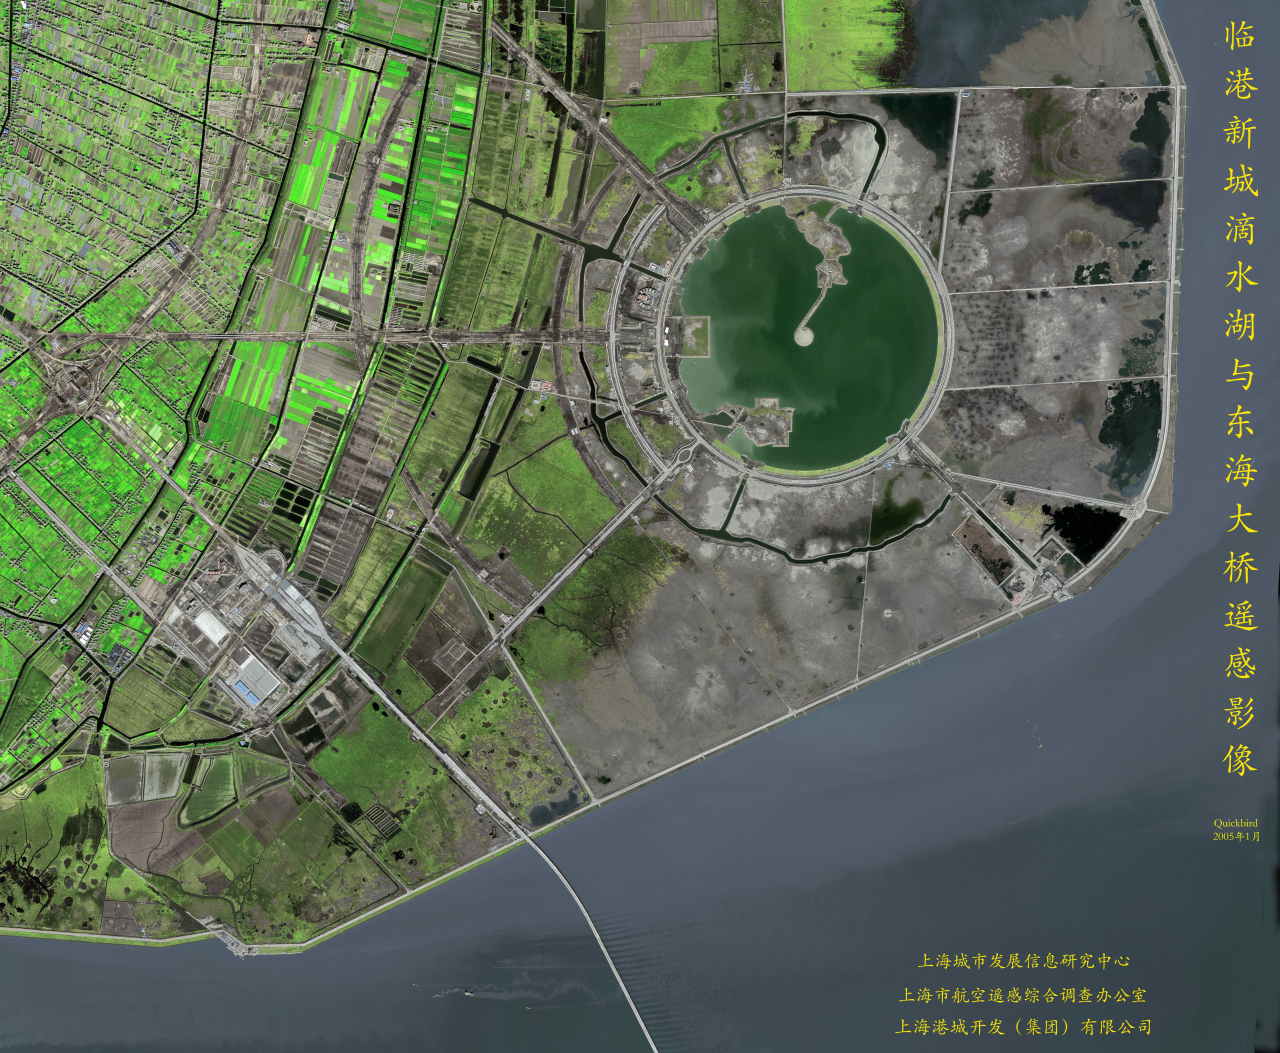 首屆世界康博會舉辦地浦東臨港新城衛星圖